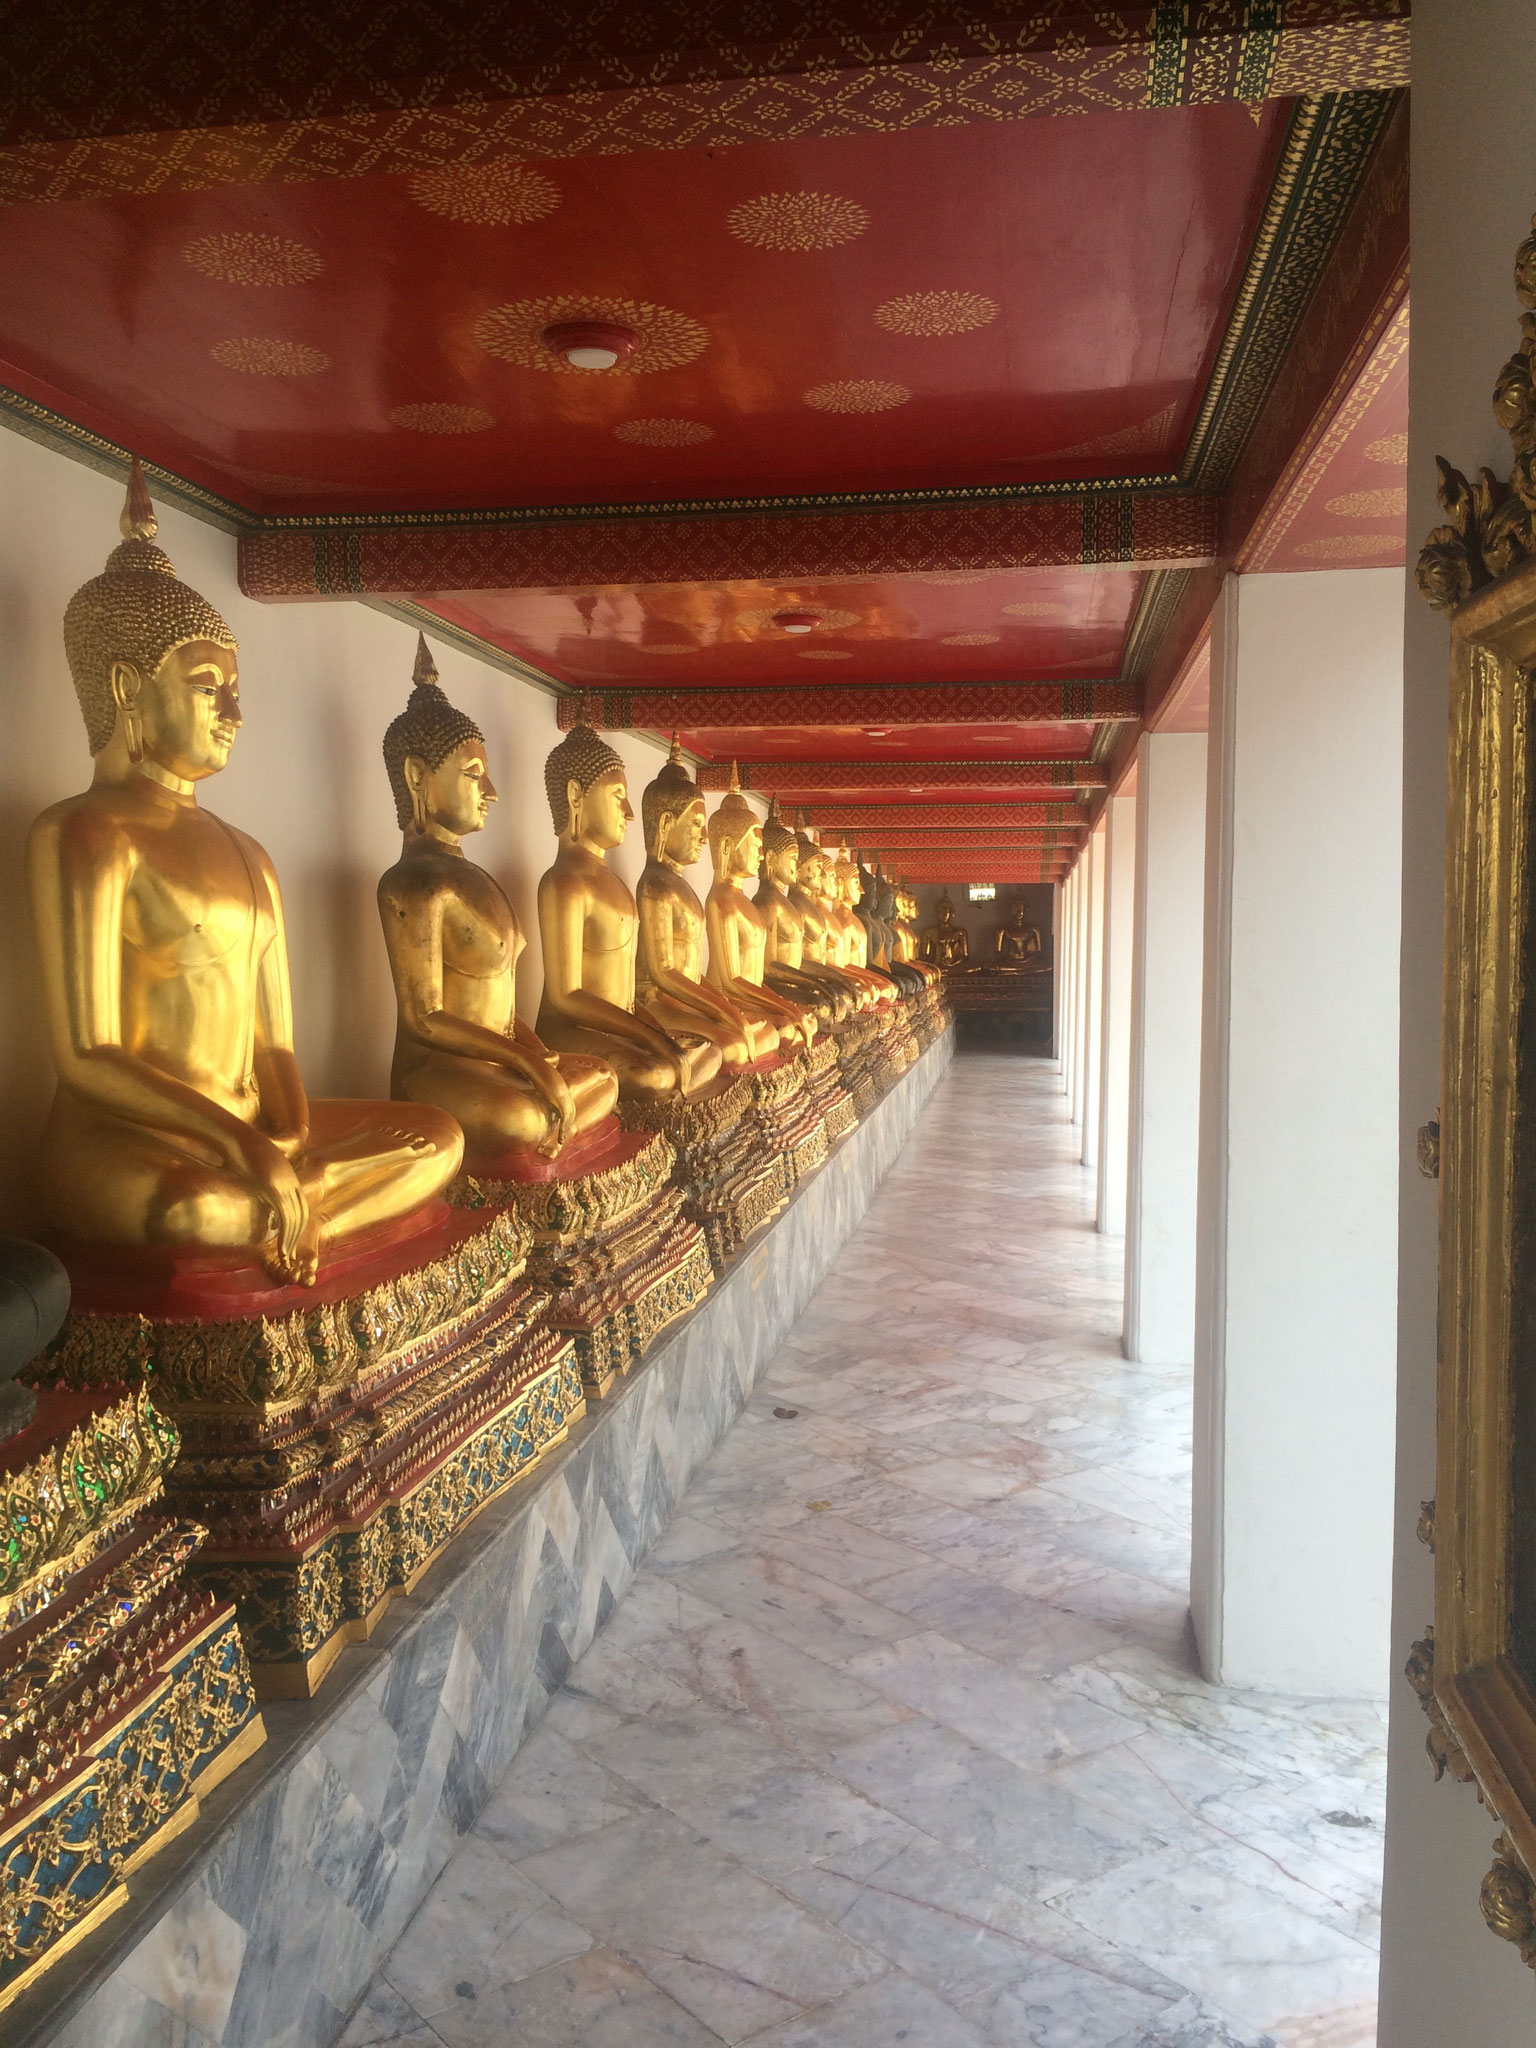 Ganz typisch für Thailand: Buddhastatuen in einer langen Reihe aufgereiht!